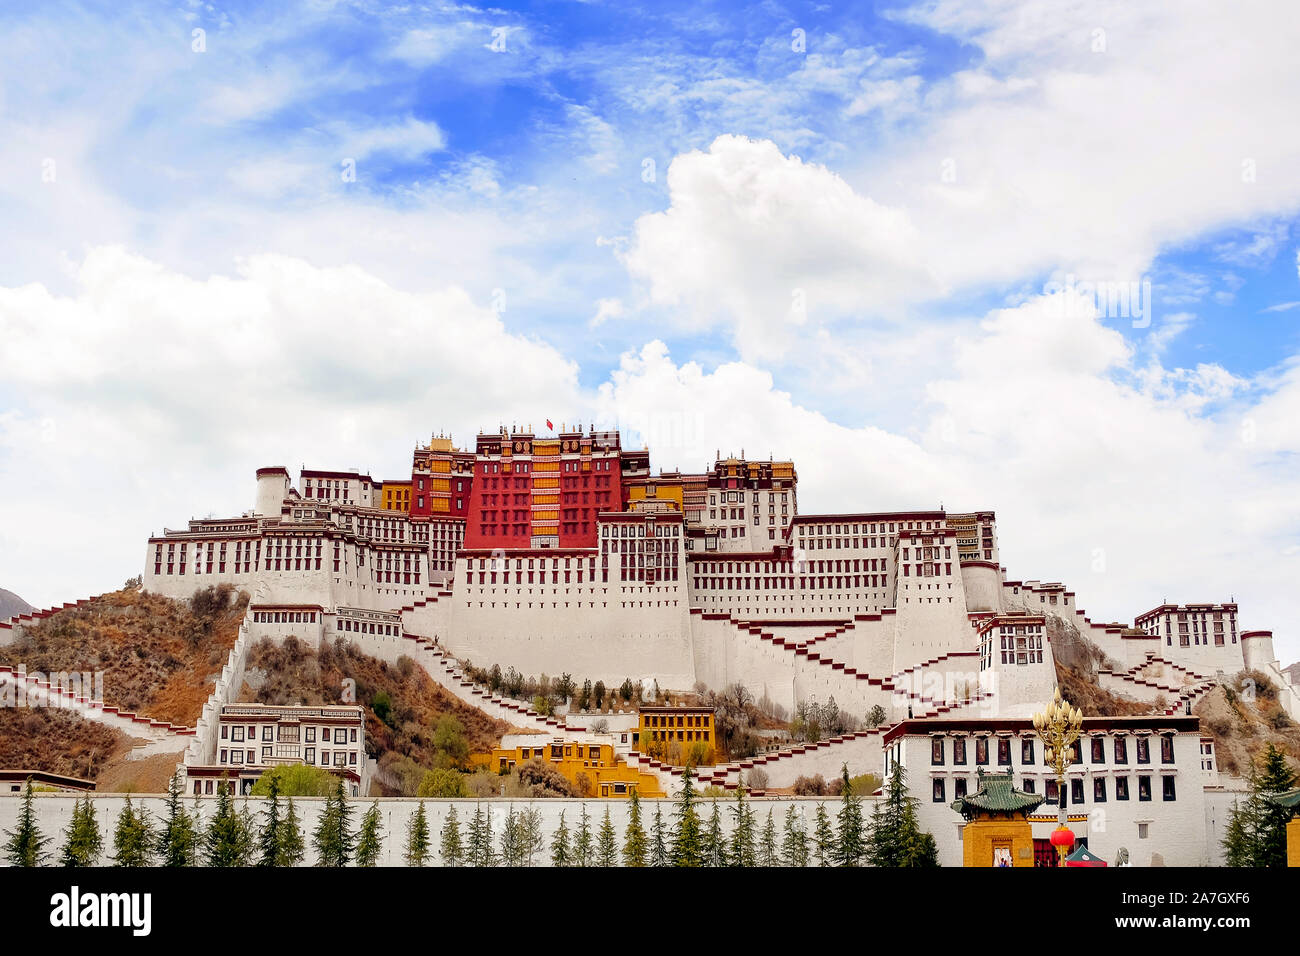 Vorderansicht des Potala Palast in Lhasa, Tibet, von grüner Vegetation, gegen einen blauem Himmel mit weißen Wolken bedeckt. Stockfoto